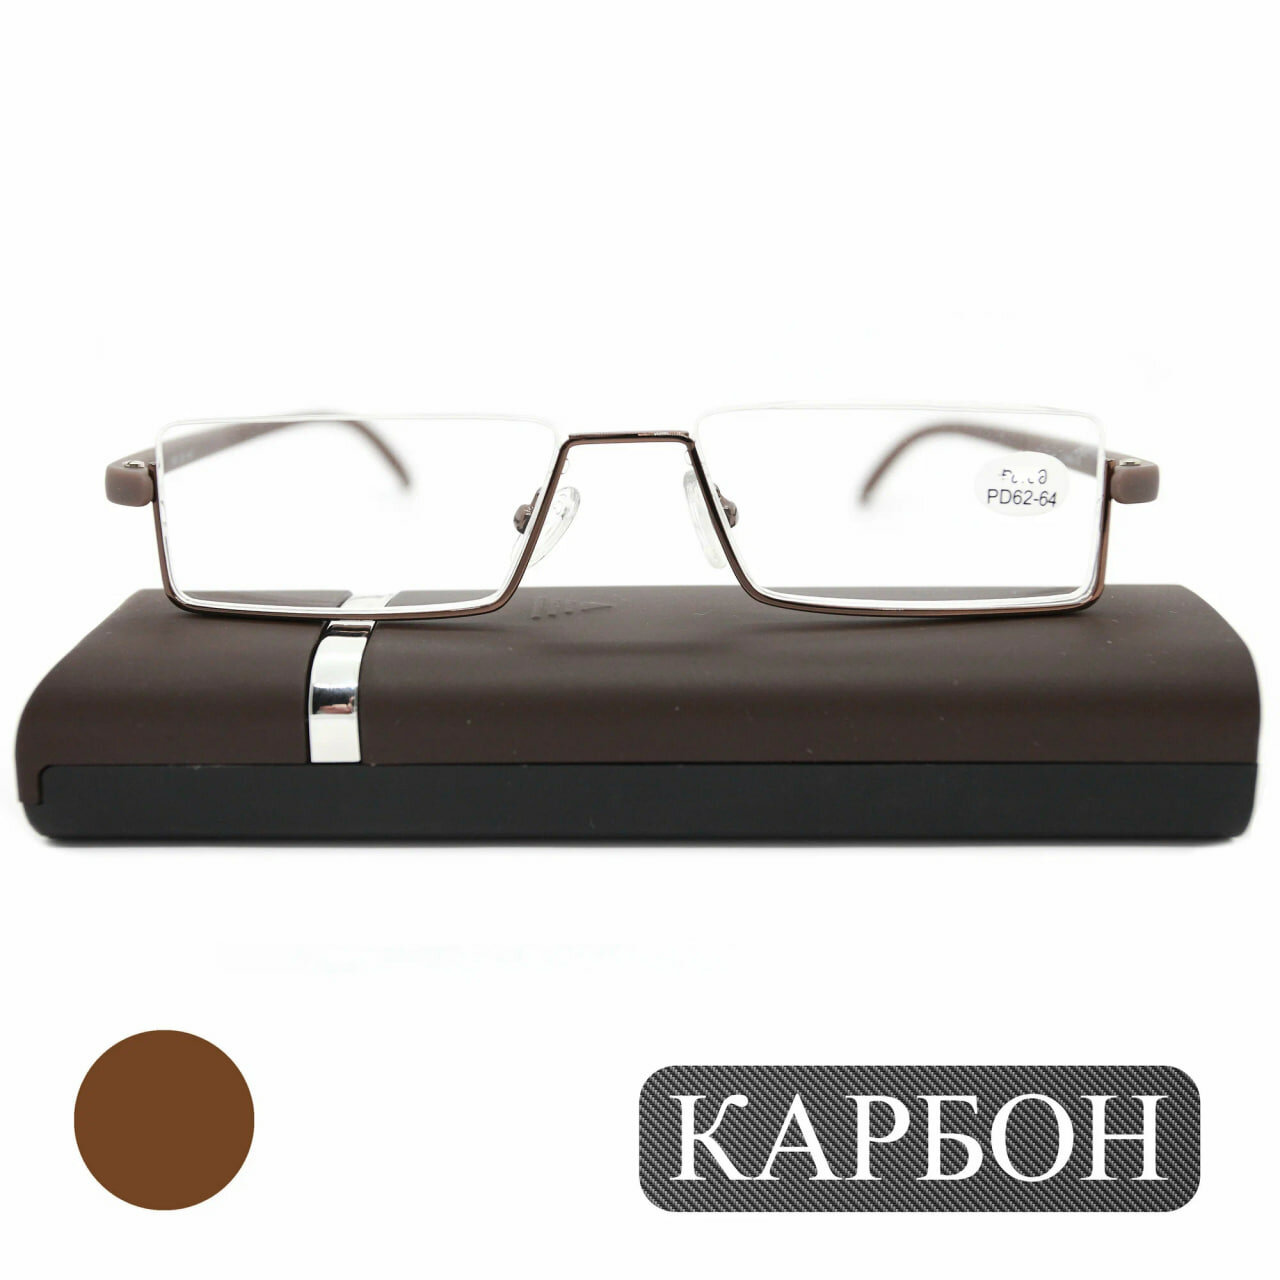 Полуободковые очки узкие для чтения (+1.25) противоударные с футляром, TR747 C4, леска сверху, линза пластик, цвет коричневый, pd 62-64